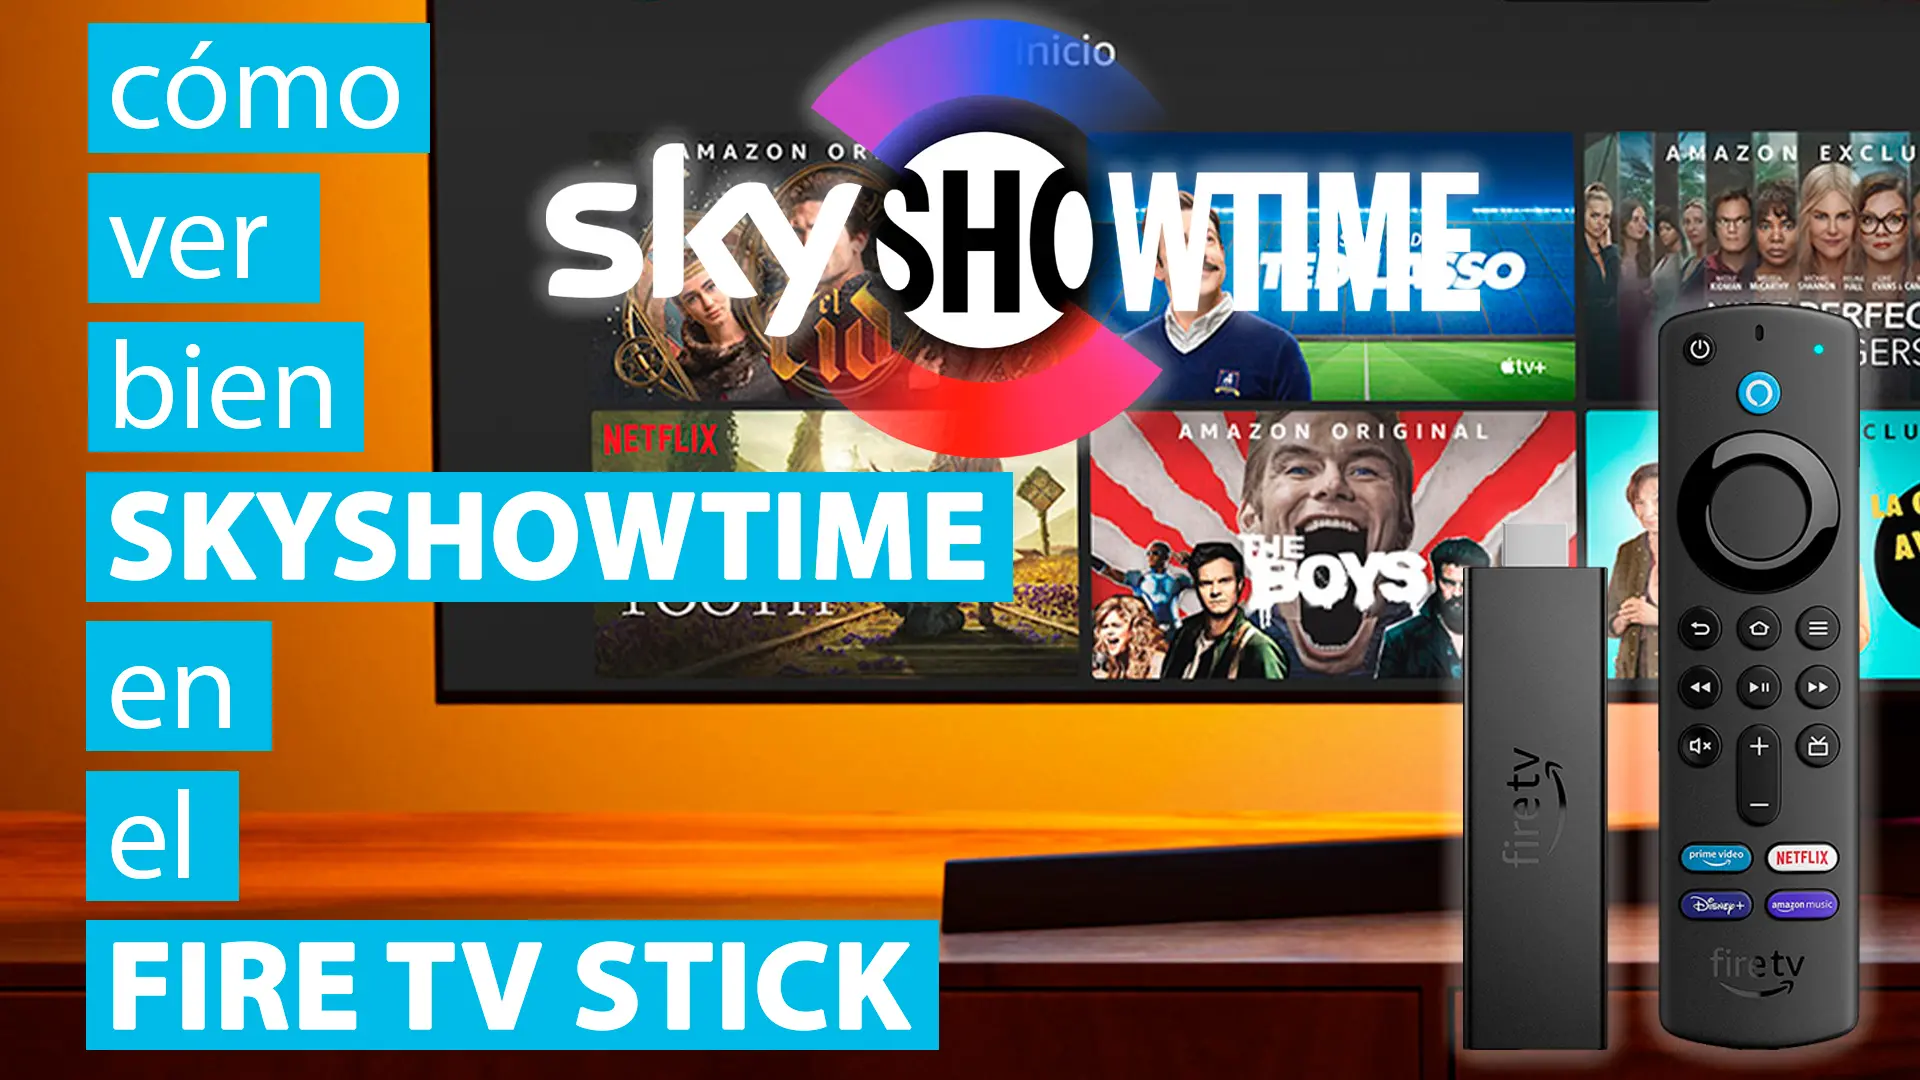 Cómo ver bien SkyShowtime en el Fire TV Stick paso a paso